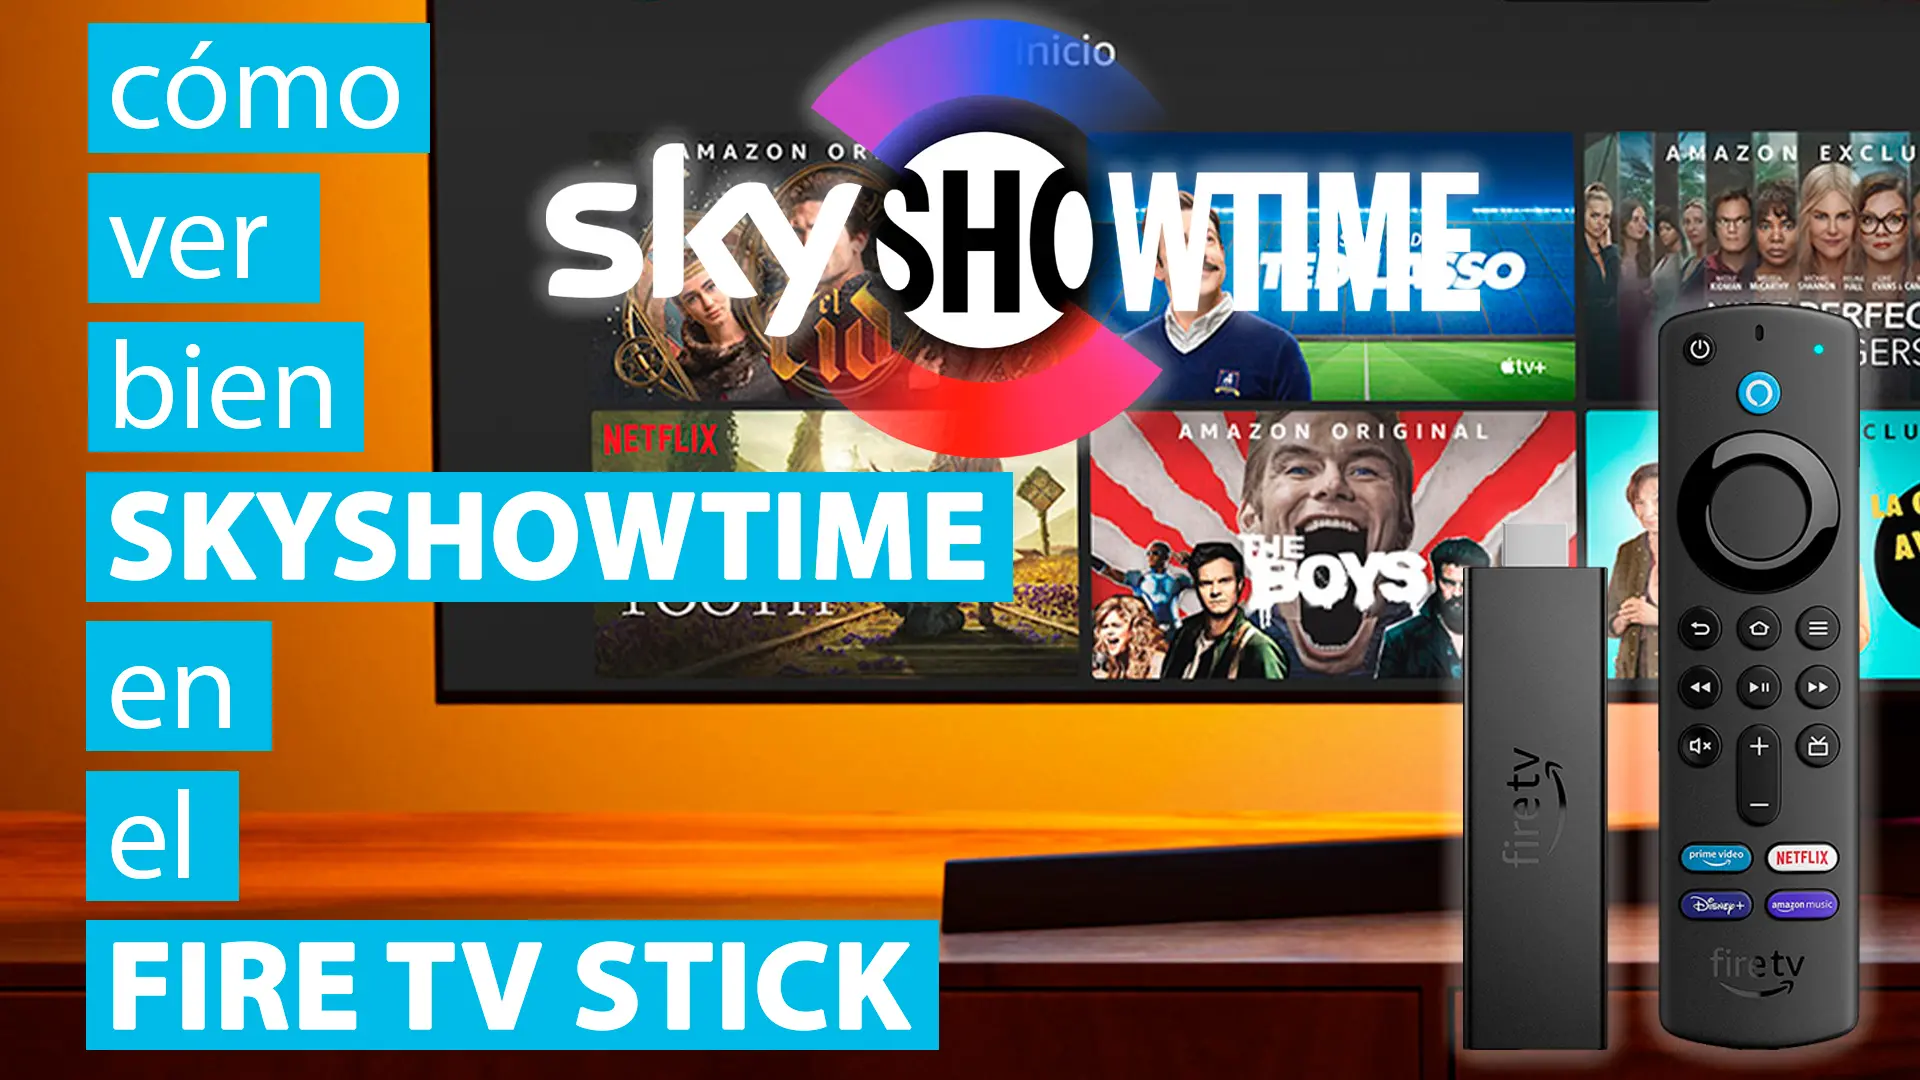 Cómo ver bien SkyShowtime en el Fire TV Stick paso a paso